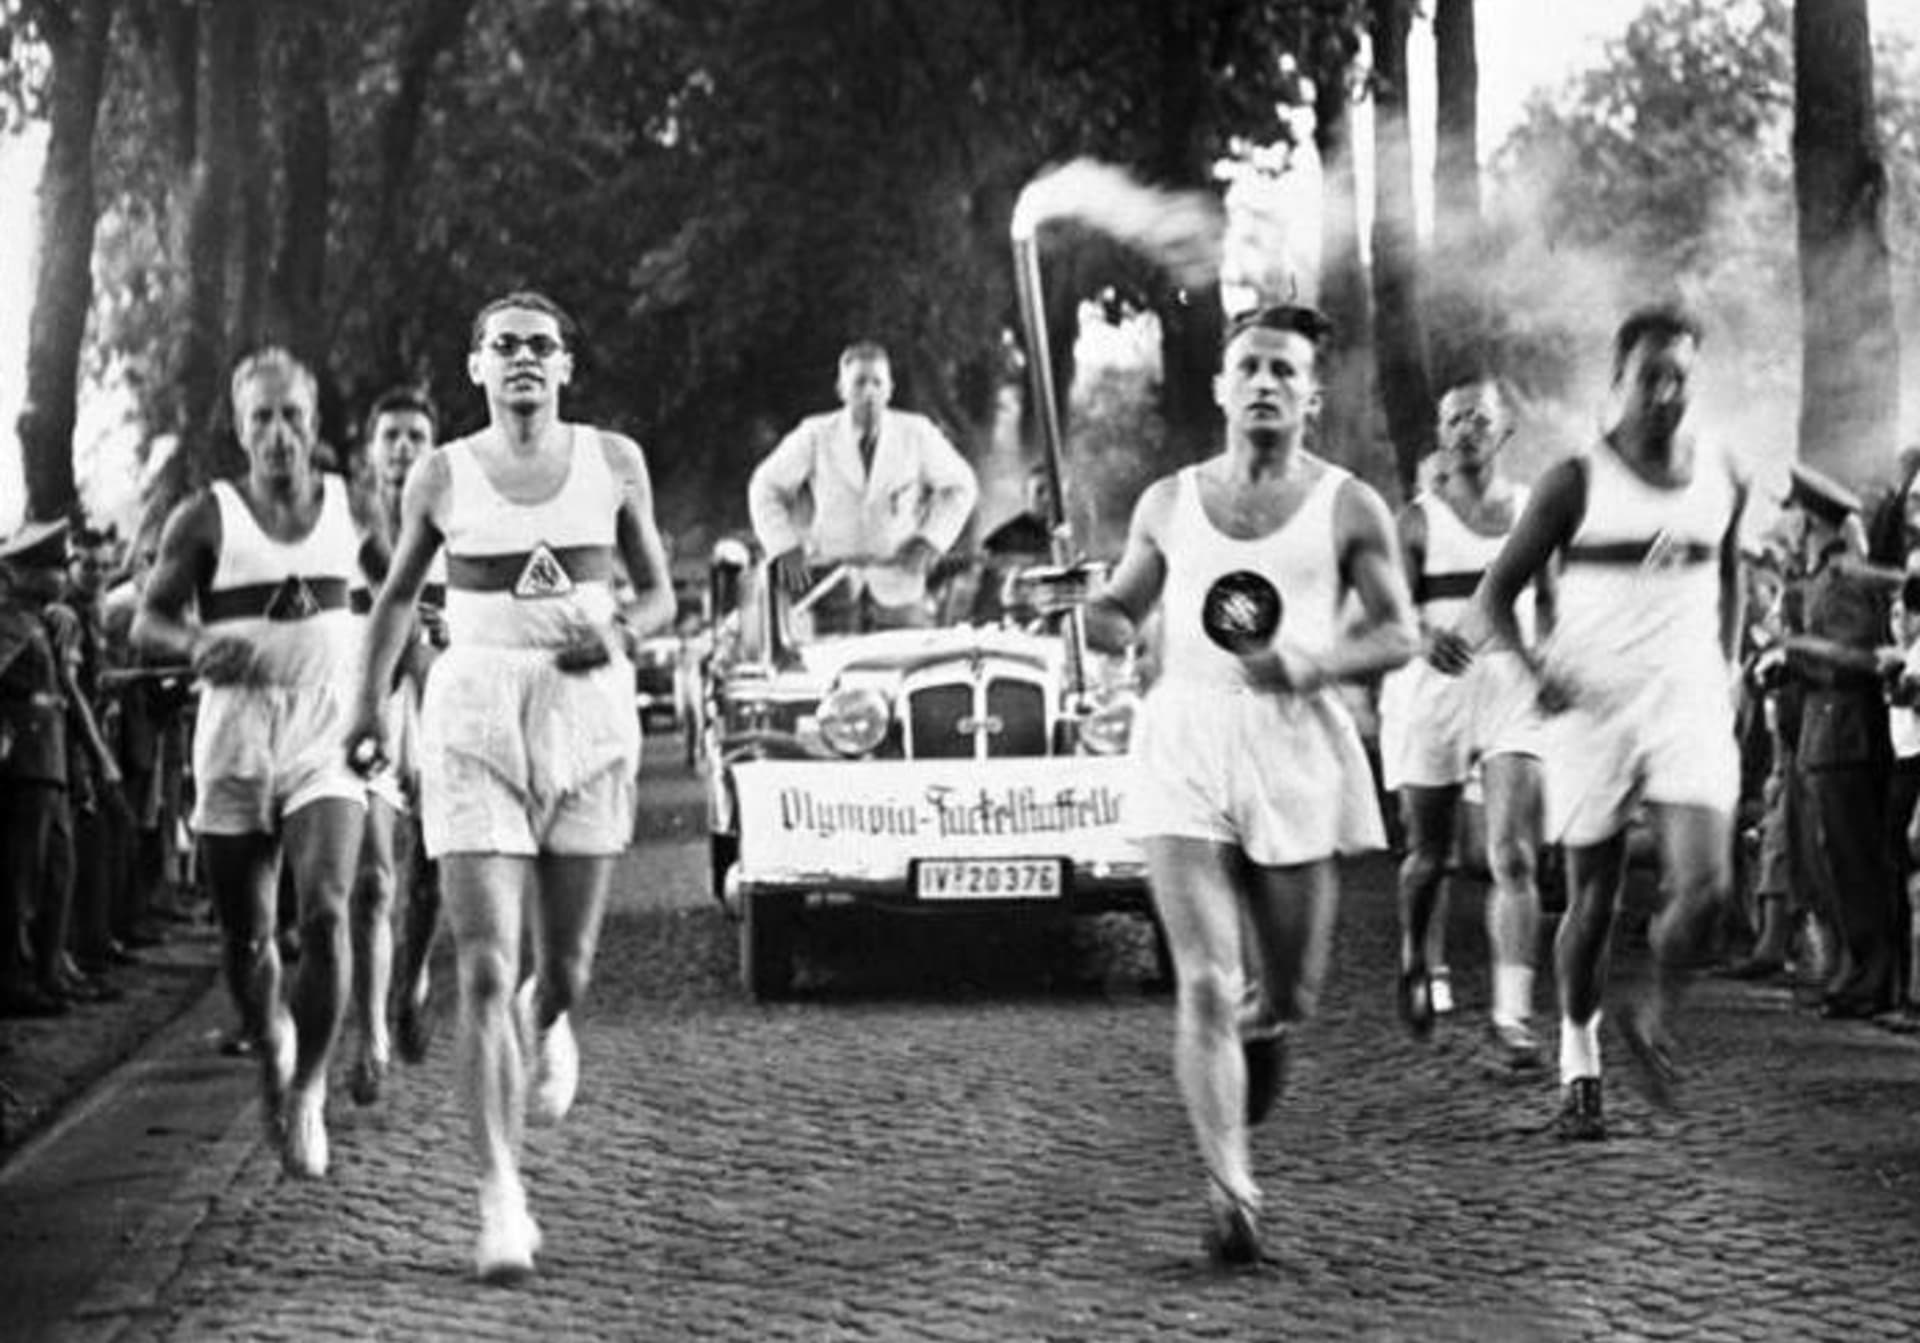 V roce 1936 se na letních olympijských hrách v Berlíně ukázalo, že krystalický metamfetamin Benzedrine, který němečtí olympionici zdatně sypali, zvyšuje výkonnost.